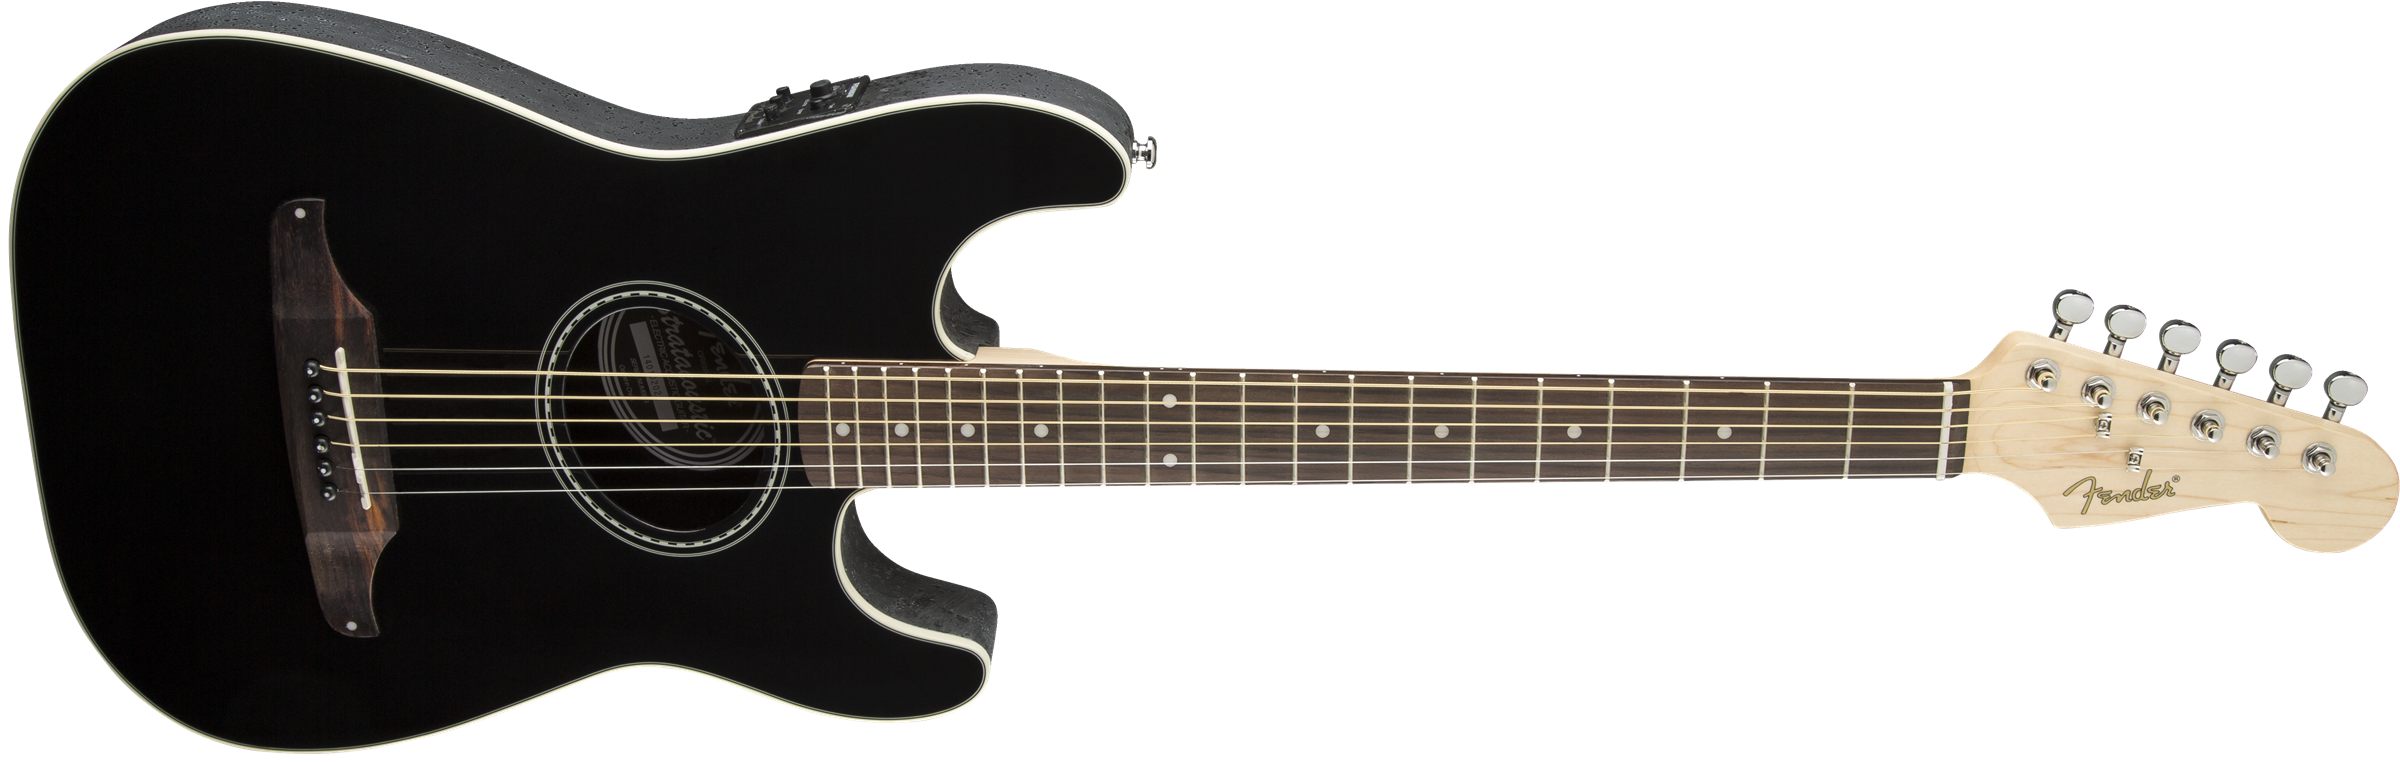 Fender Stratacoustic Standard (wal) - Black - Westerngitarre & electro - Variation 5